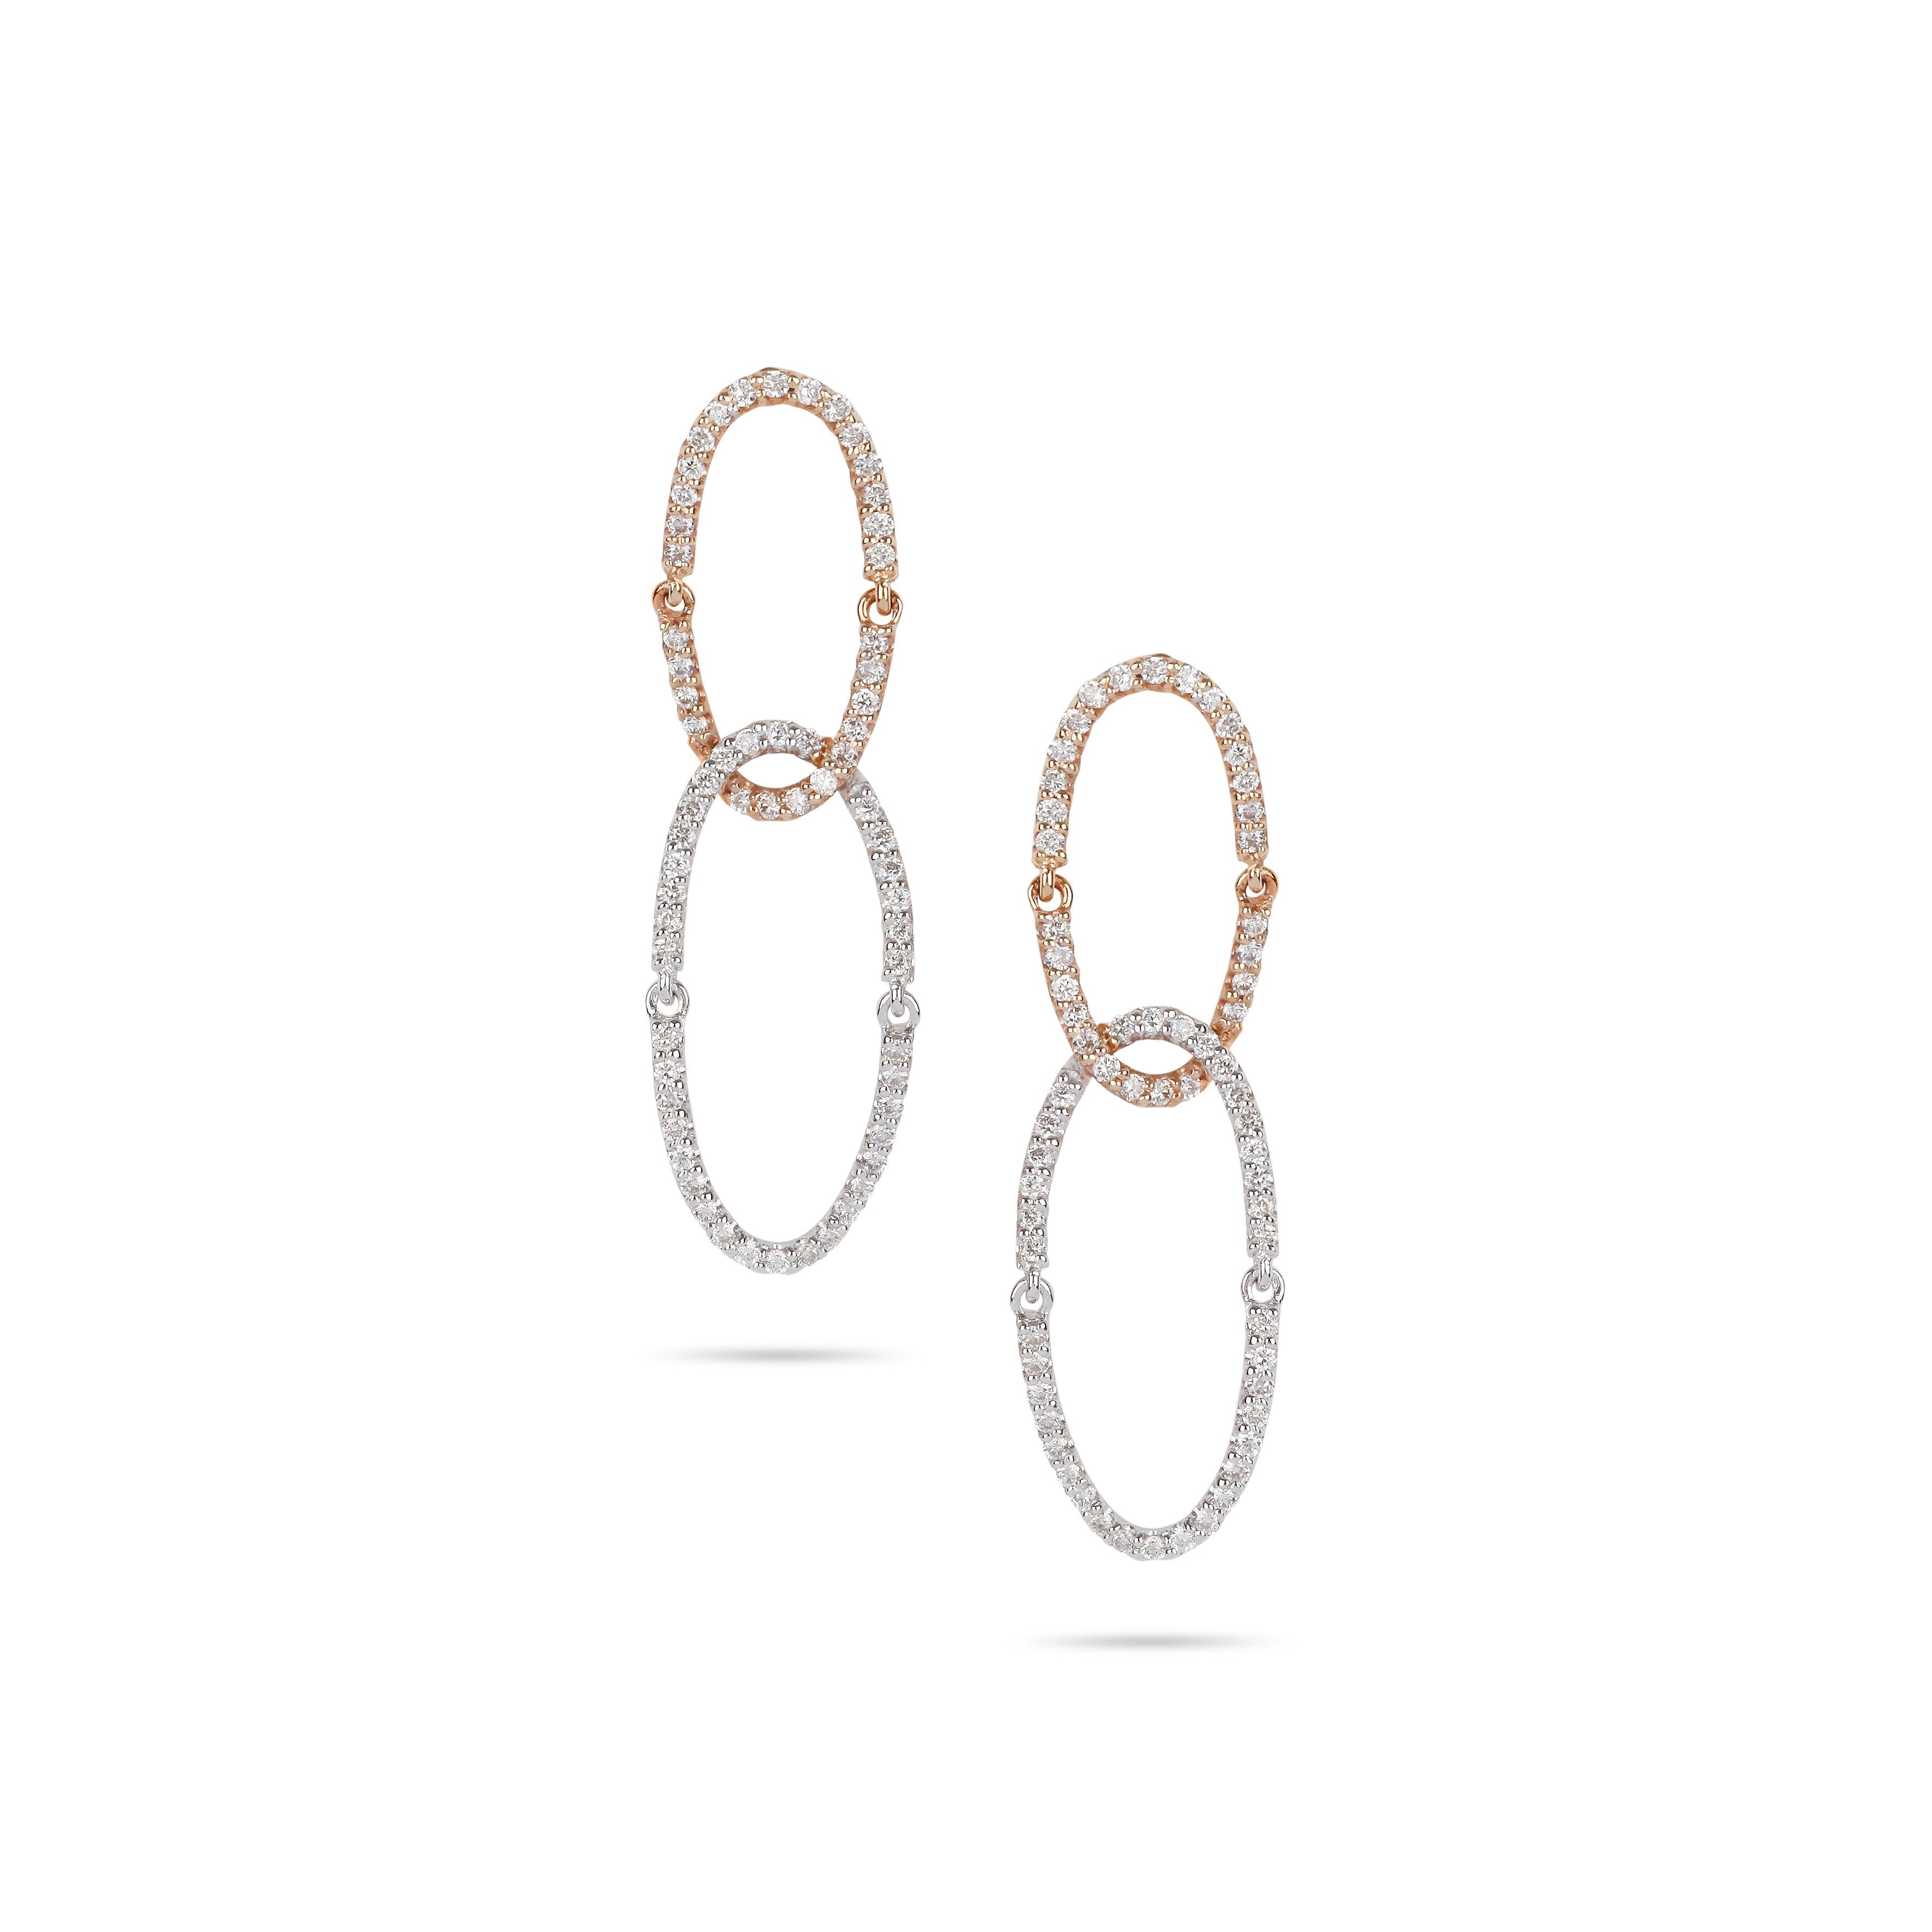 Oval Loops Earrings | Jewelry online shop